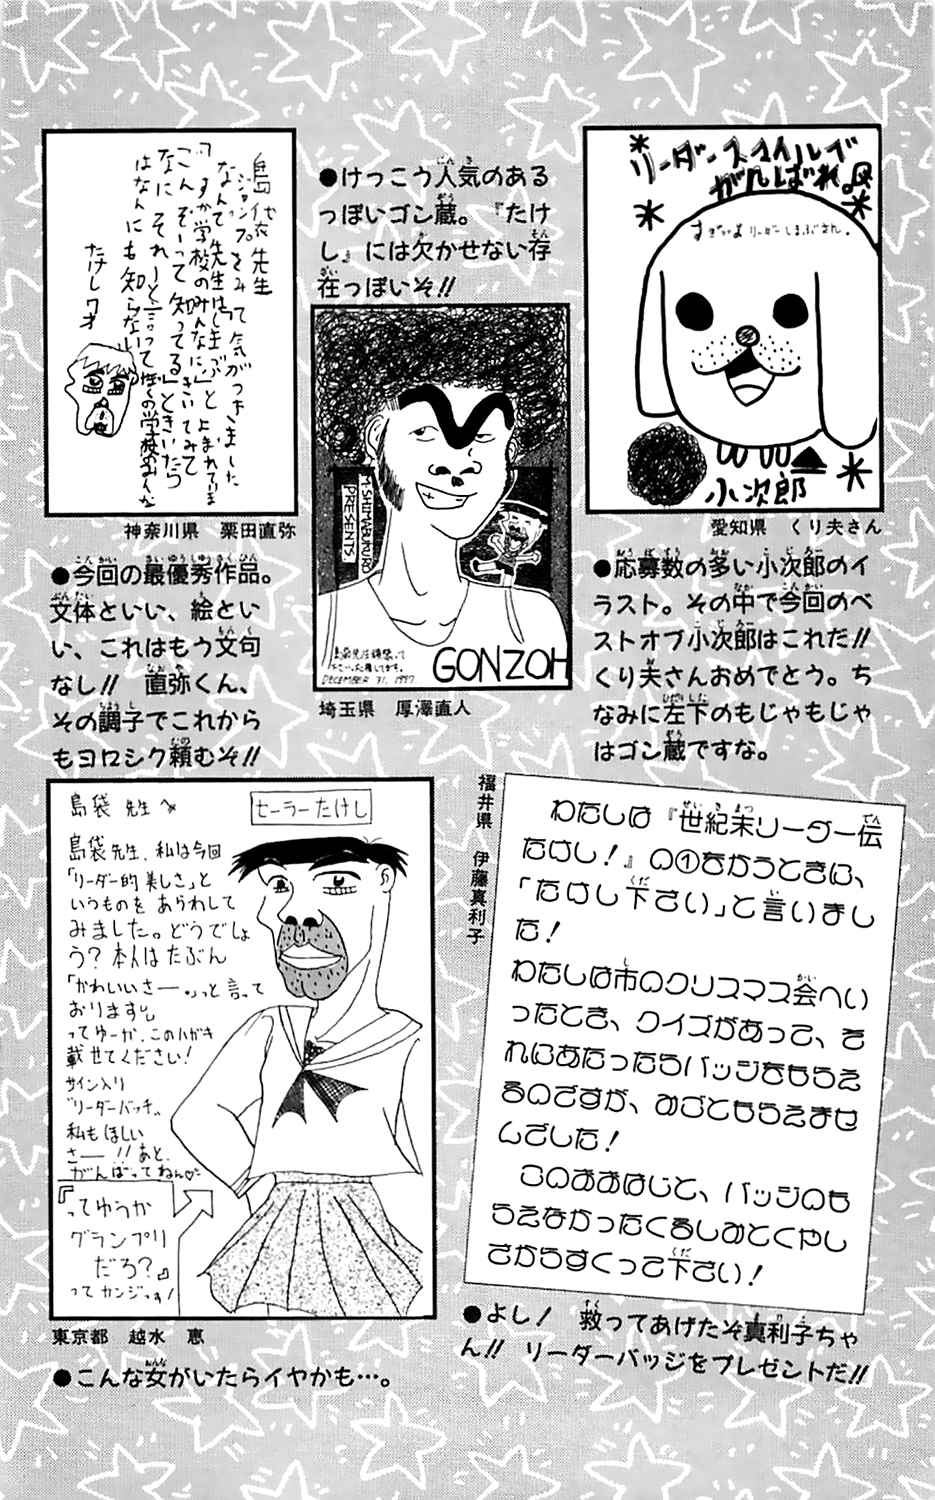 Seikimatsu Leader Den Takeshi! Vol.1 Ch.17